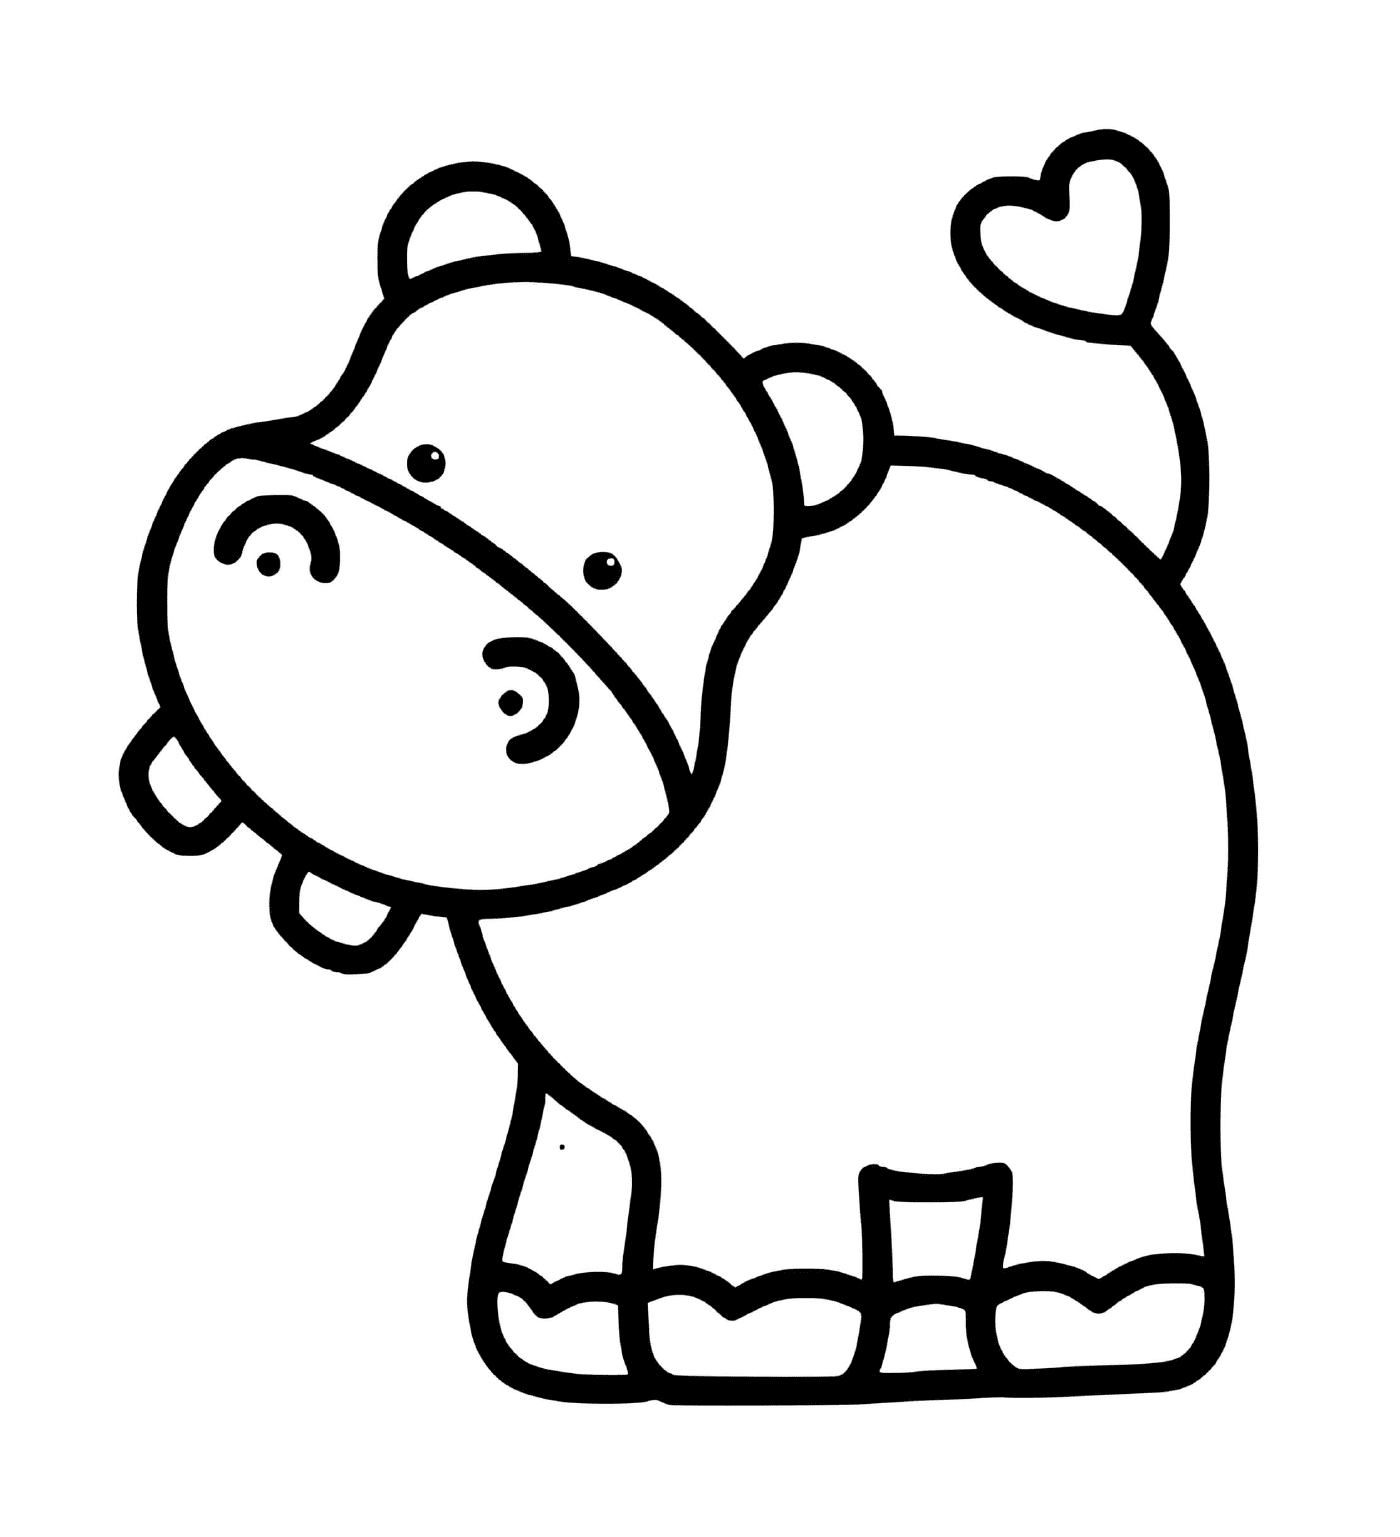  Un ippopotamo facile da disegnare per bambini di 2 anni 